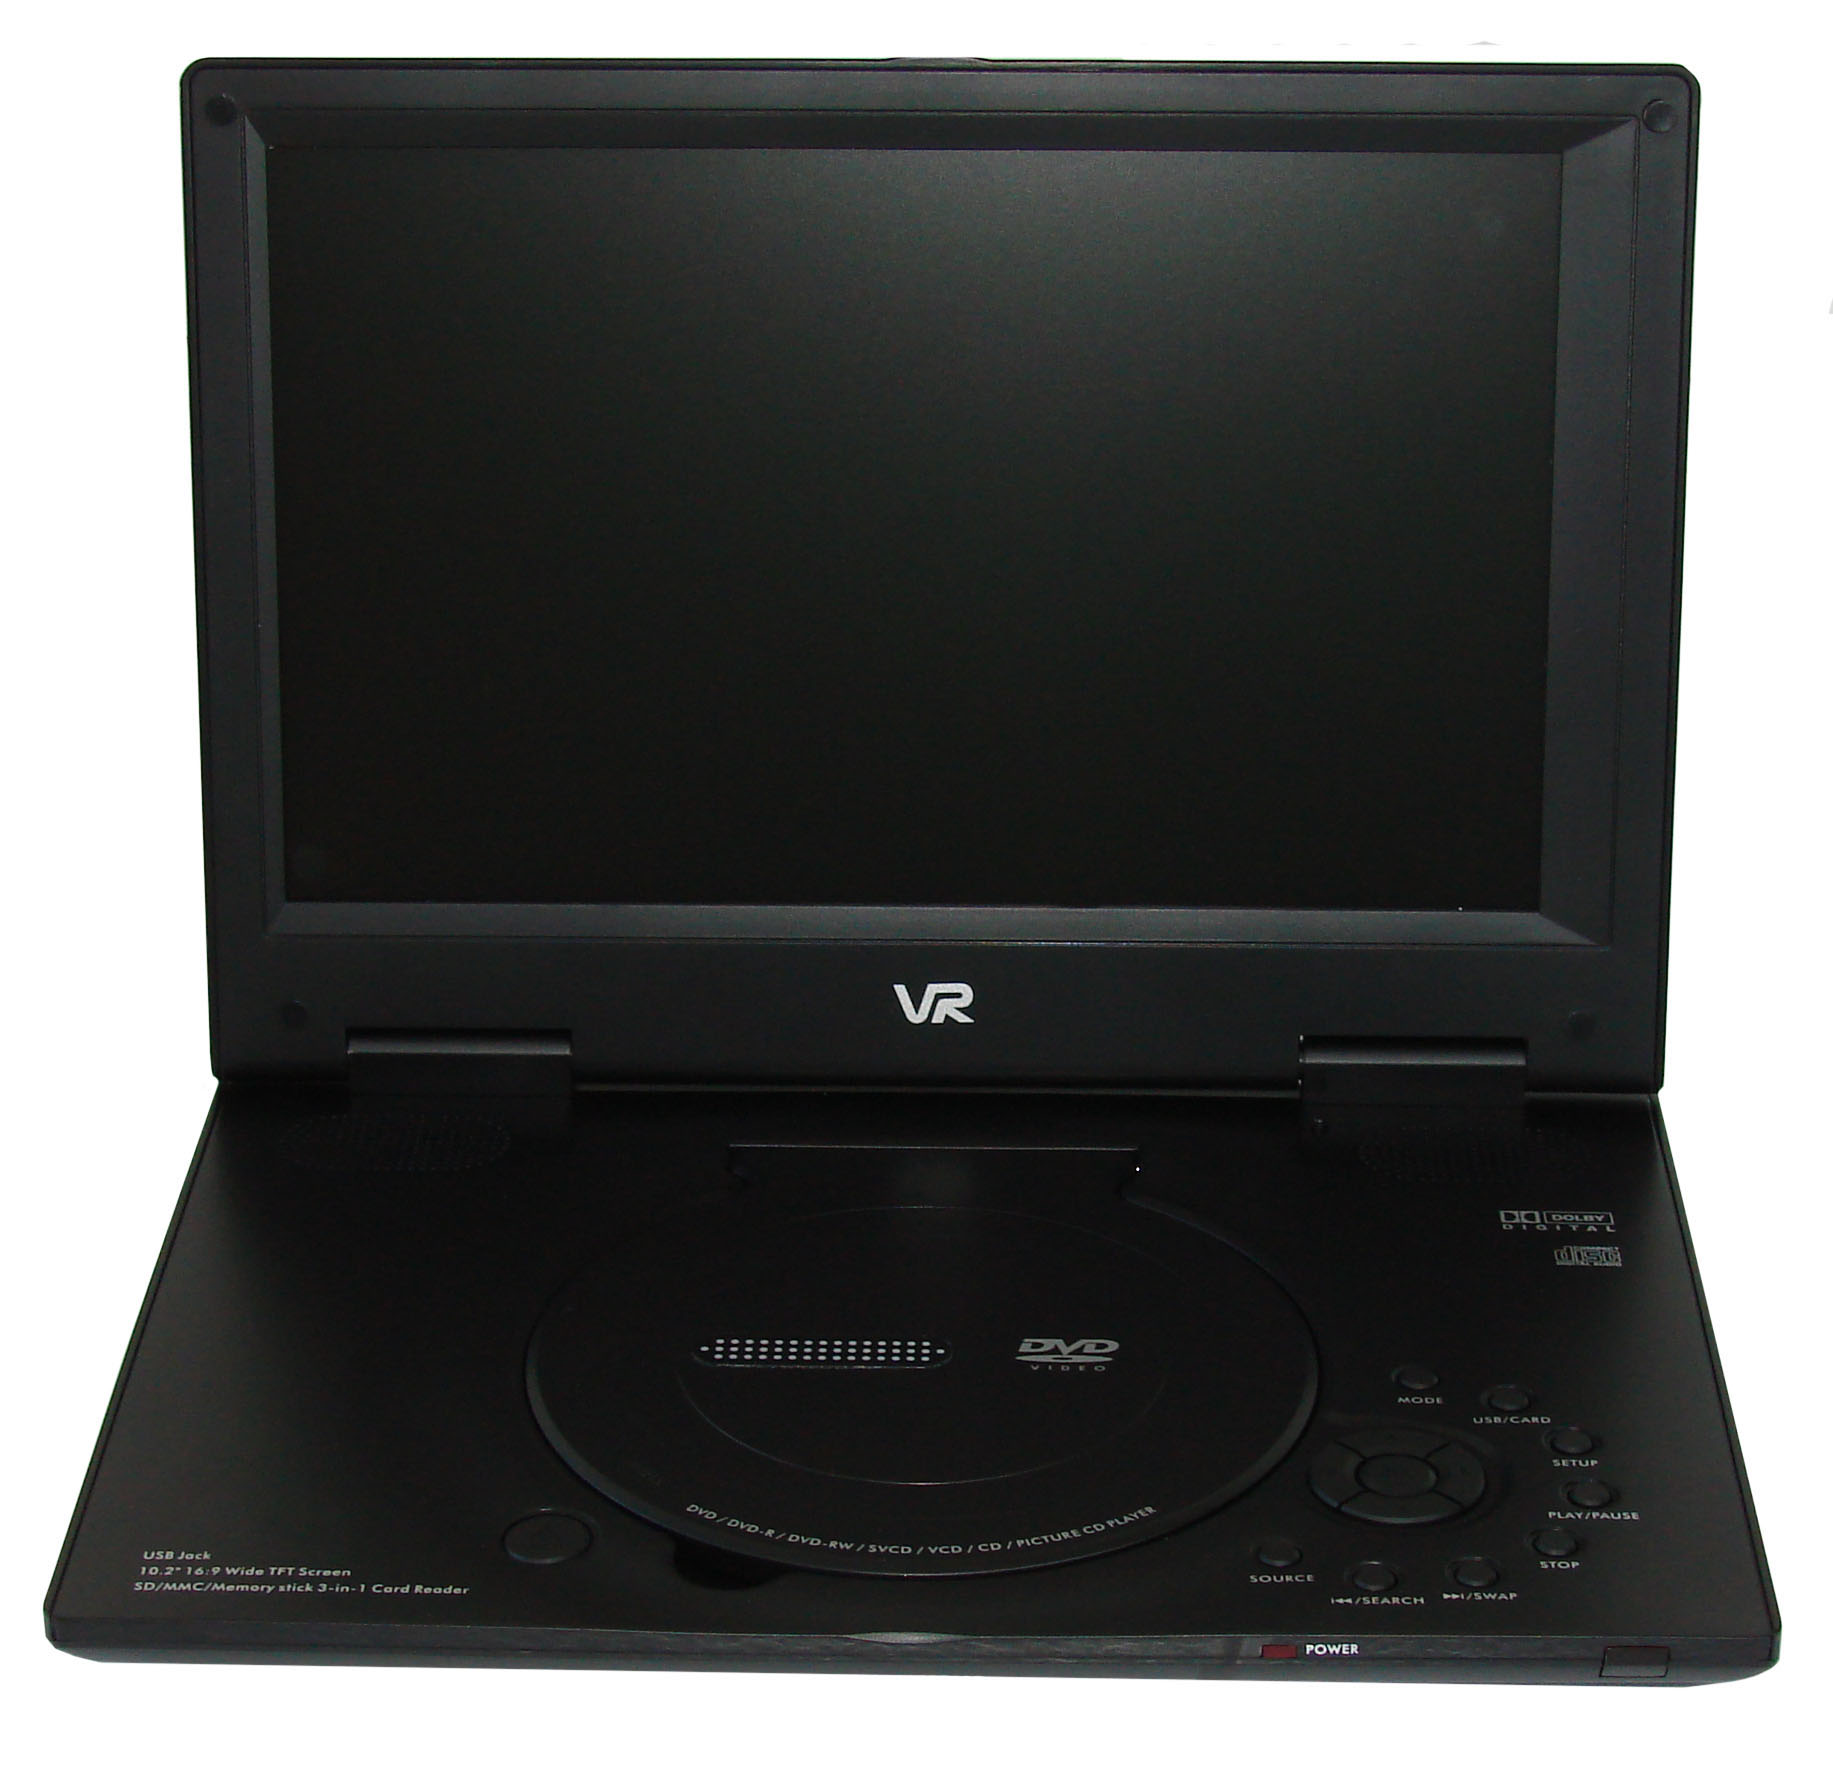 VR PDV-T102CV TV-тюнер,USB,CardReader